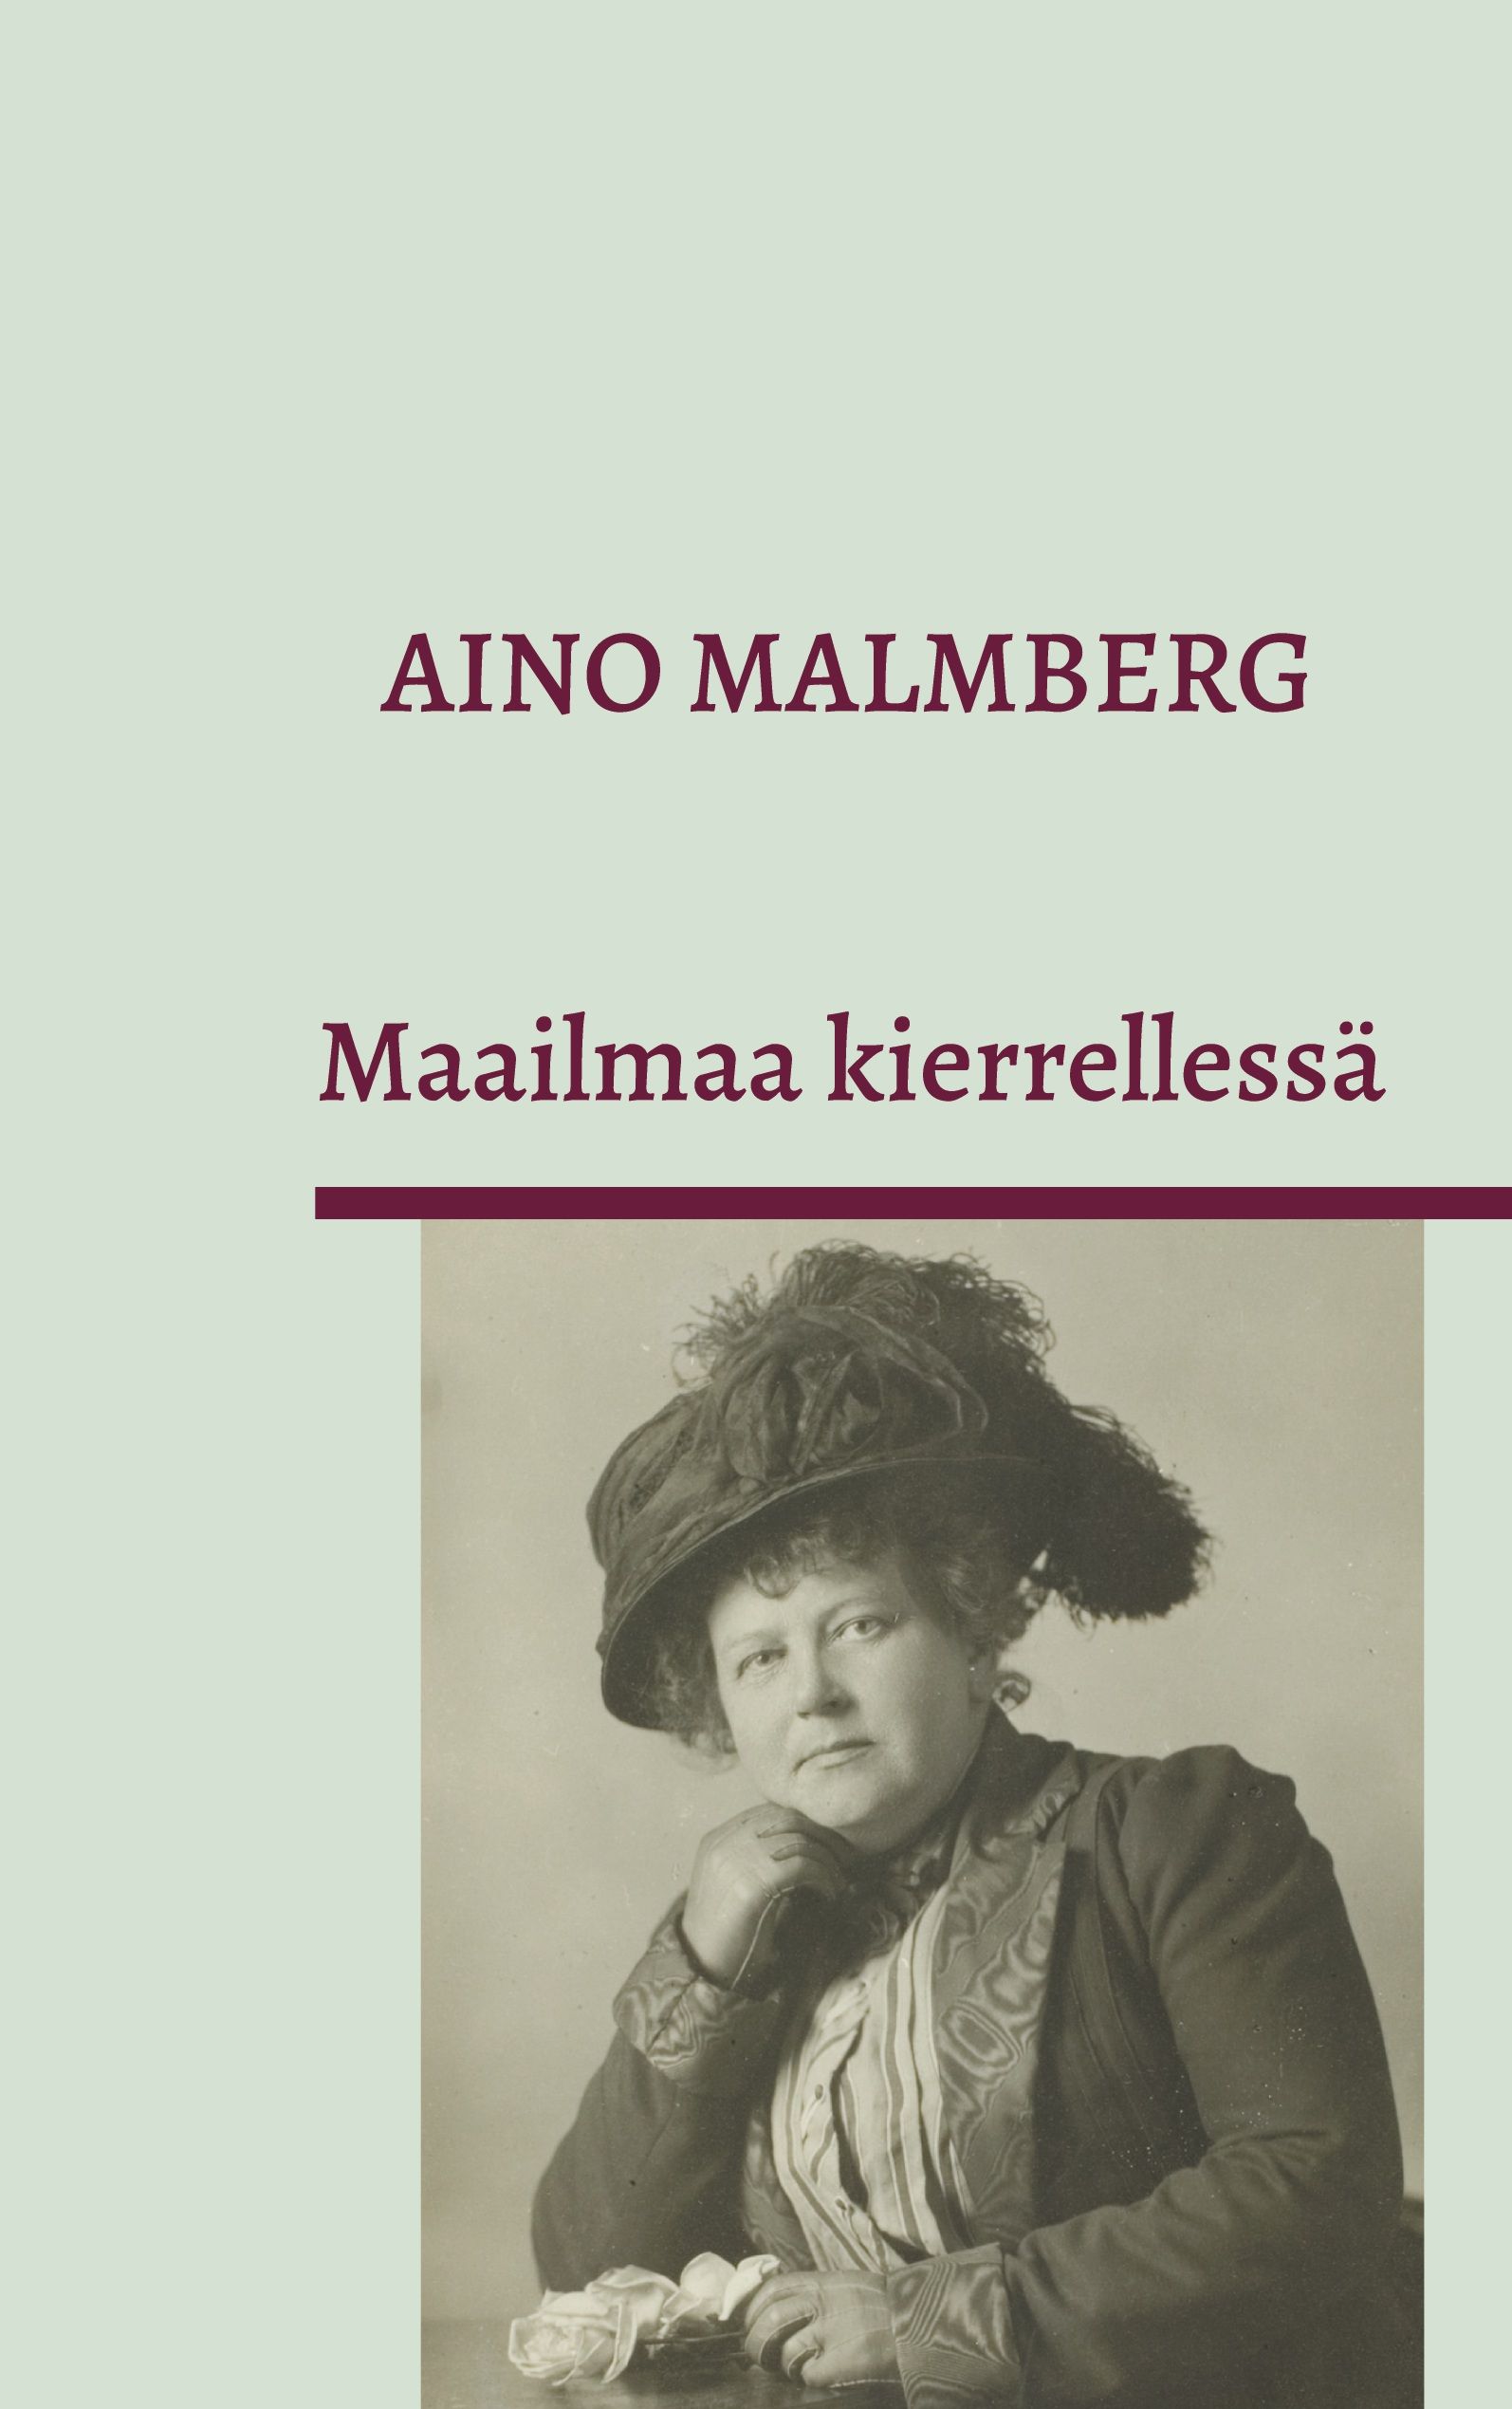 Aino Malmberg : Maailmaa kierrellessä